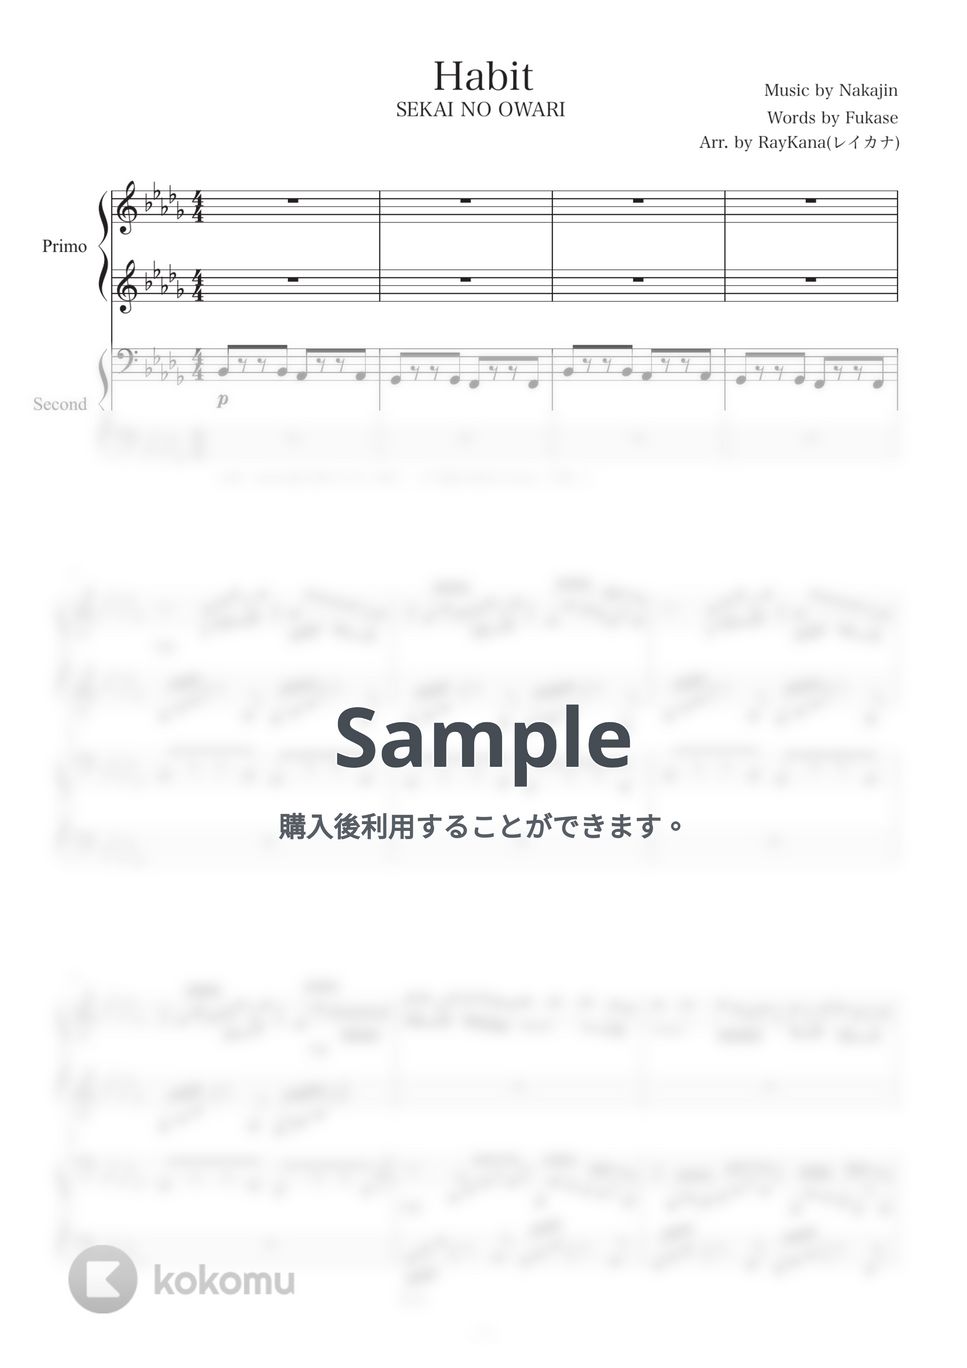 SEKAI NO OWARI - Habit (ピアノ連弾/超上級) by レイカナ(RayaKana)